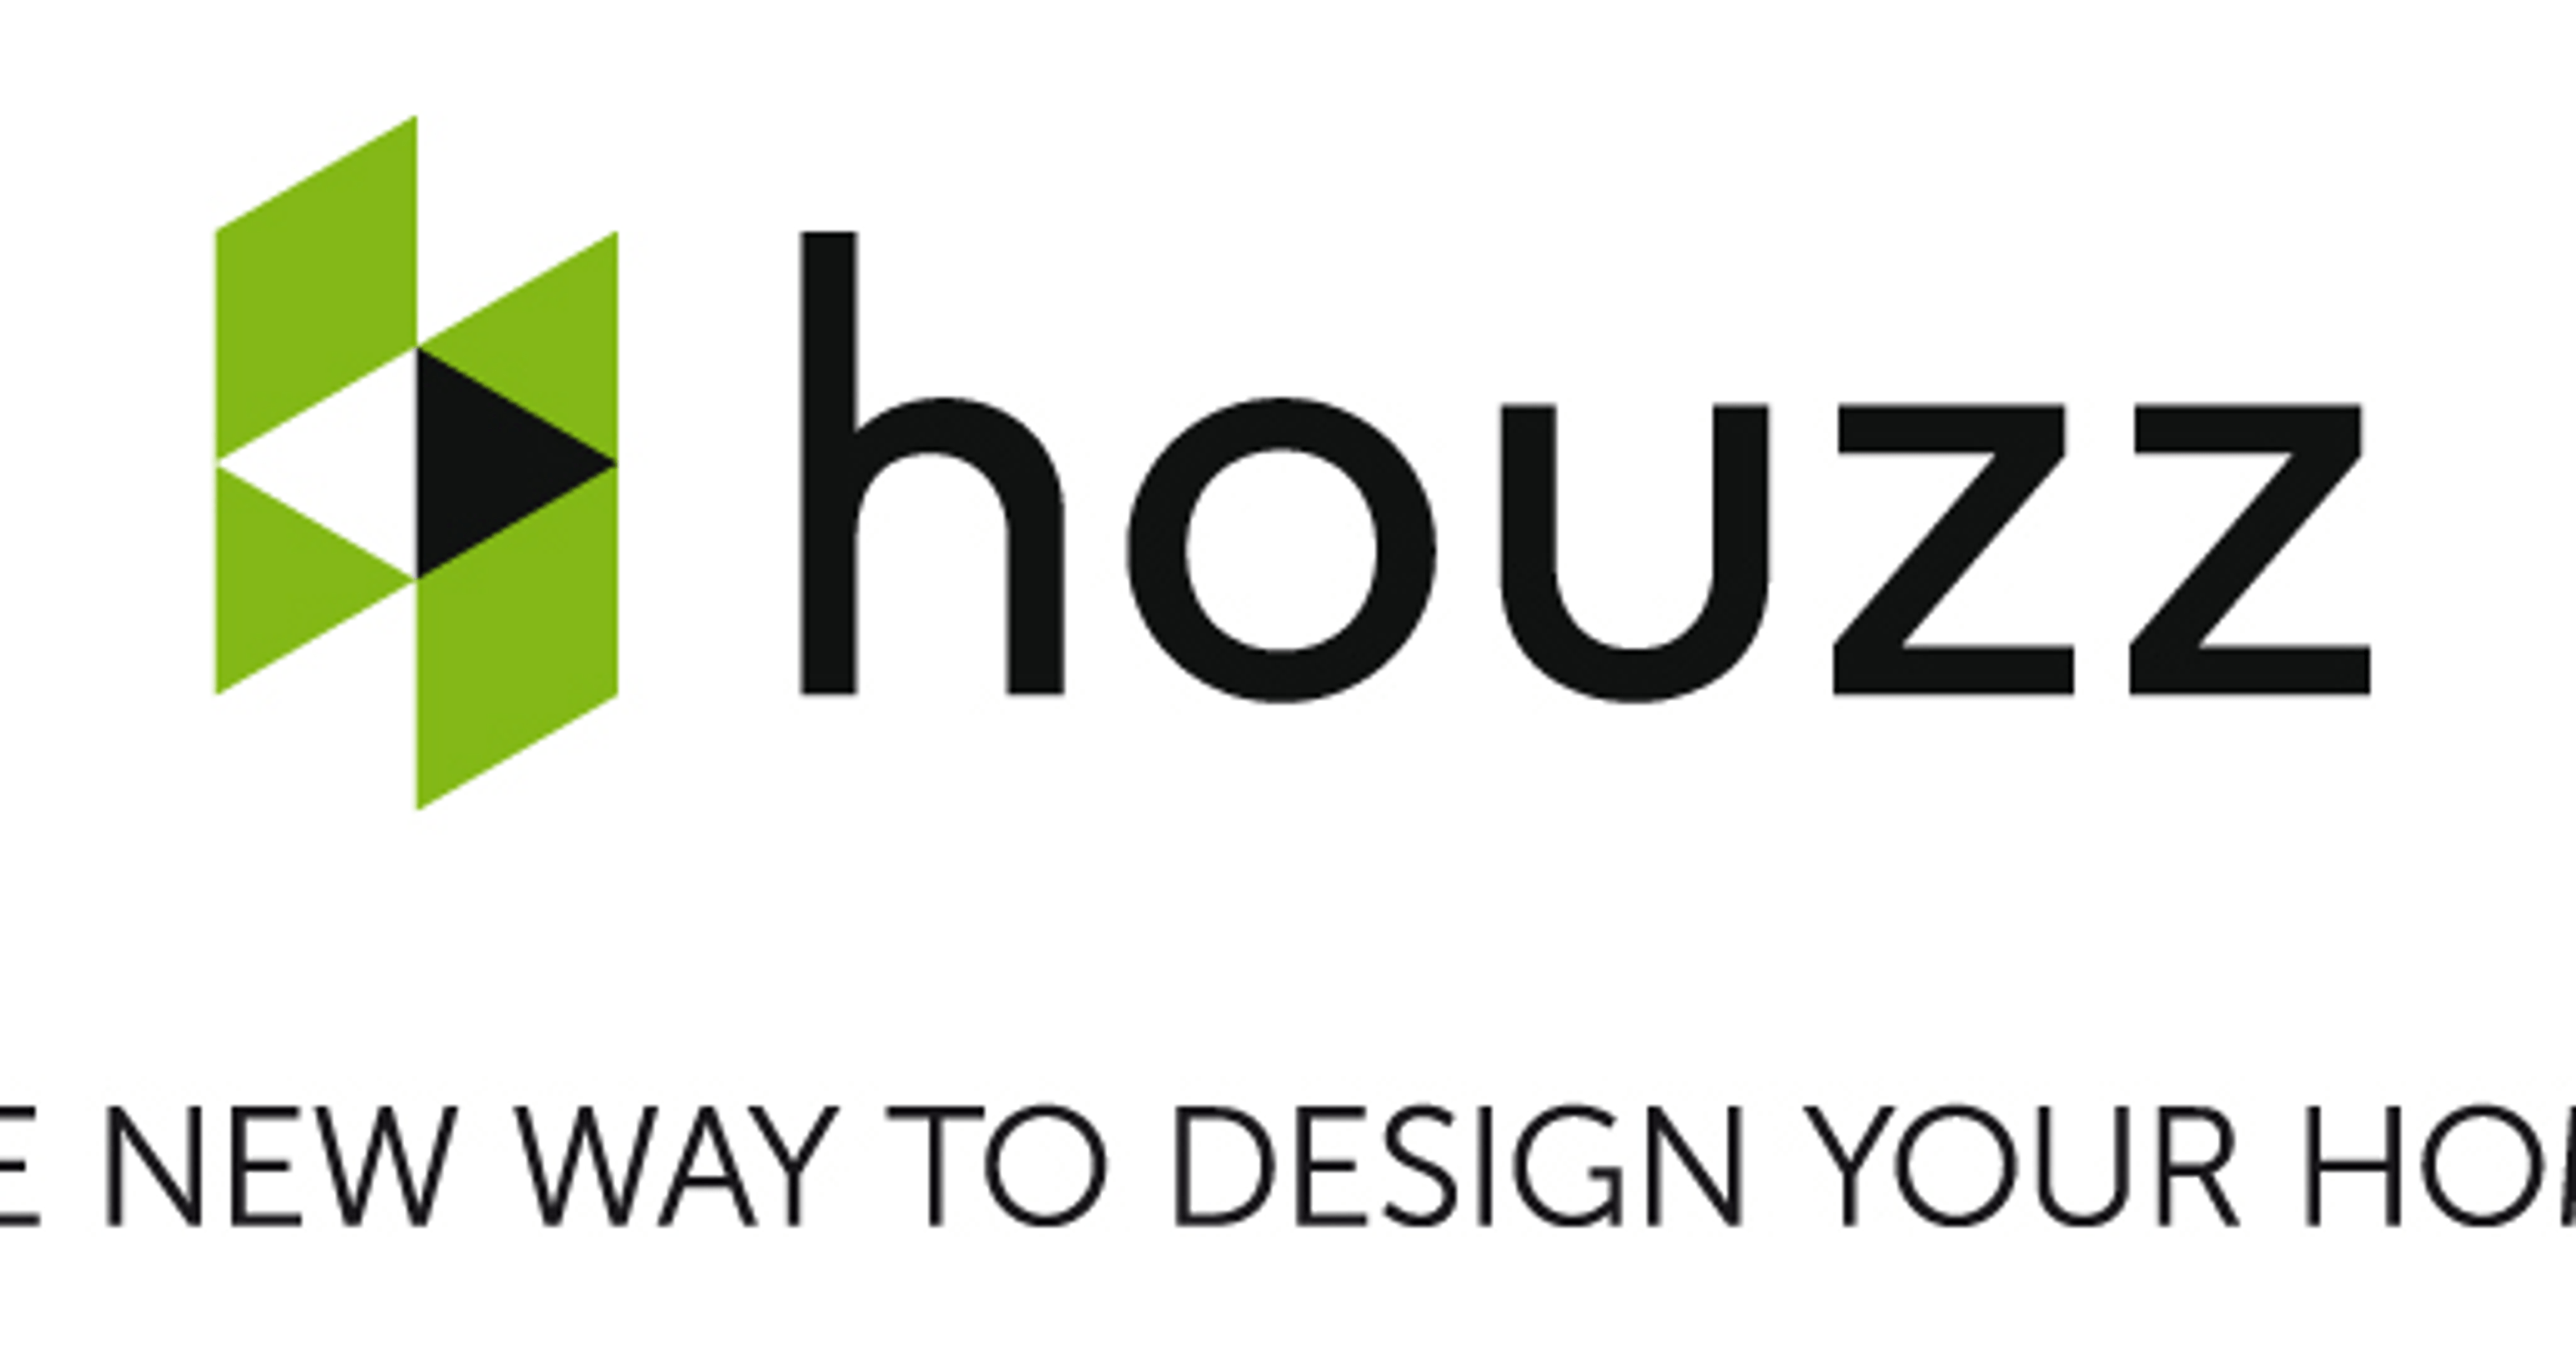 Houzz New Logo - Home design website Houzz to create 200 jobs in Nashville